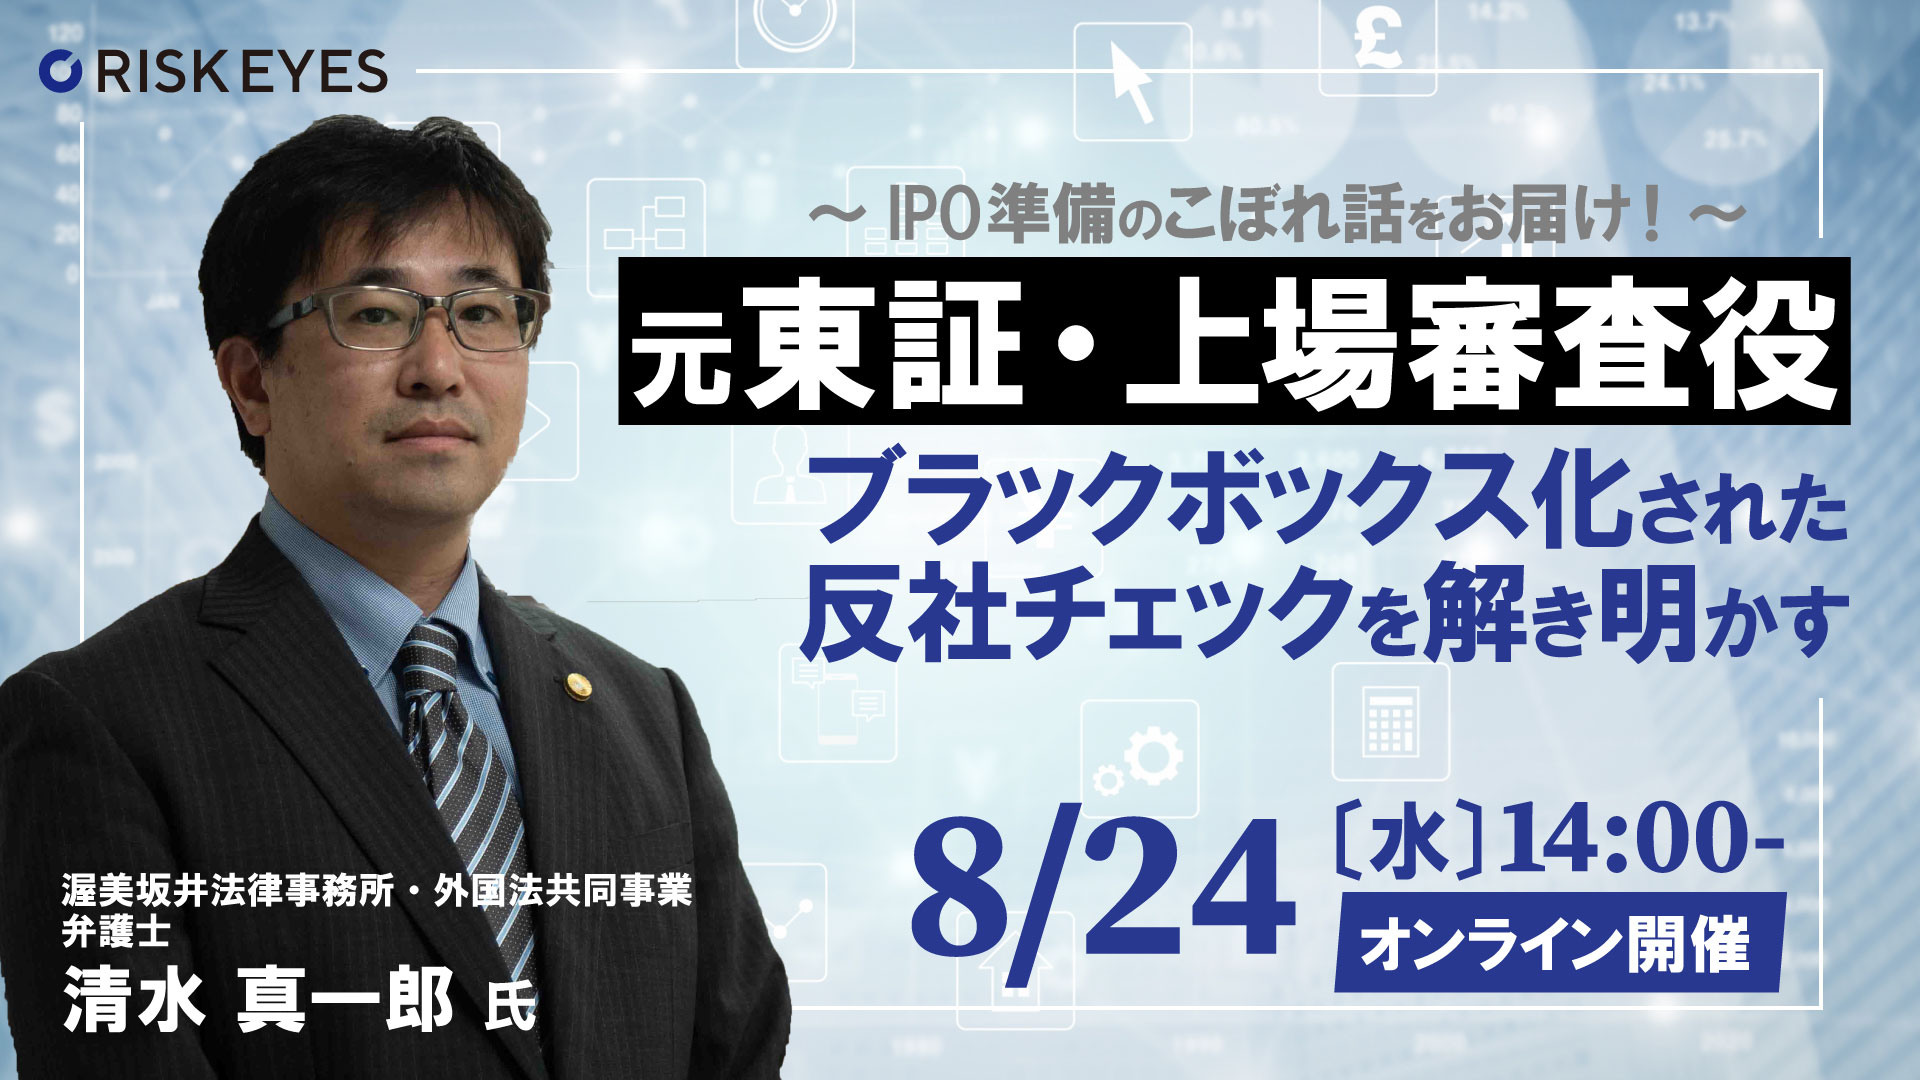 【8/24開催】 元東証・上場審査役が「IPO審査の実務を絡めて上場審査時の本音に迫る」セミナーを開催